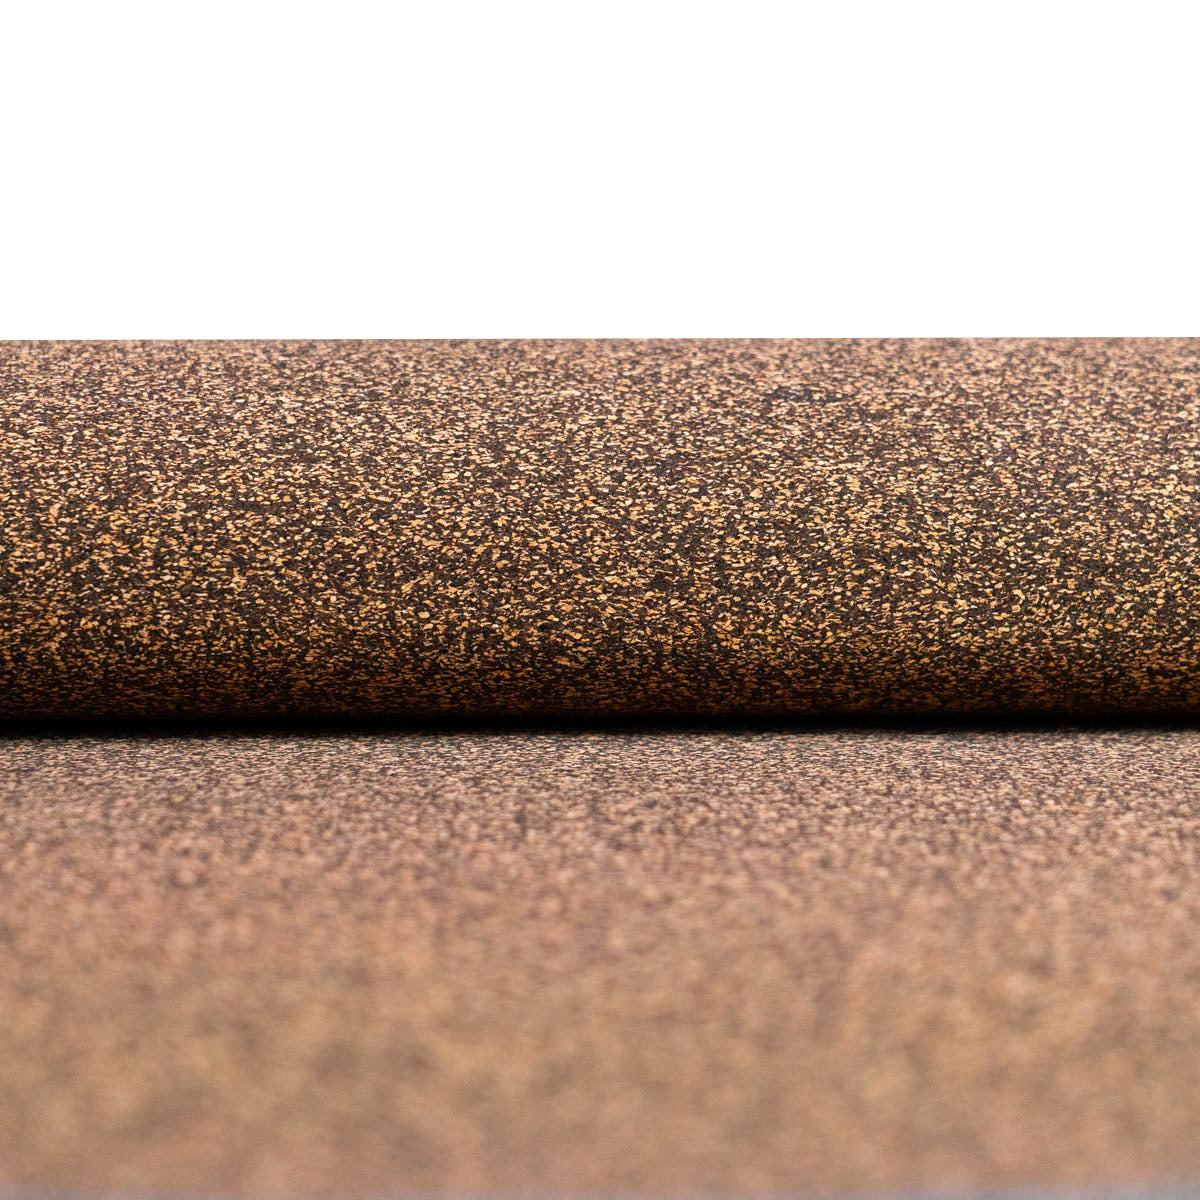 Fine-Grain Cork & Coffee Bean Composite Cork Fabric COF-511